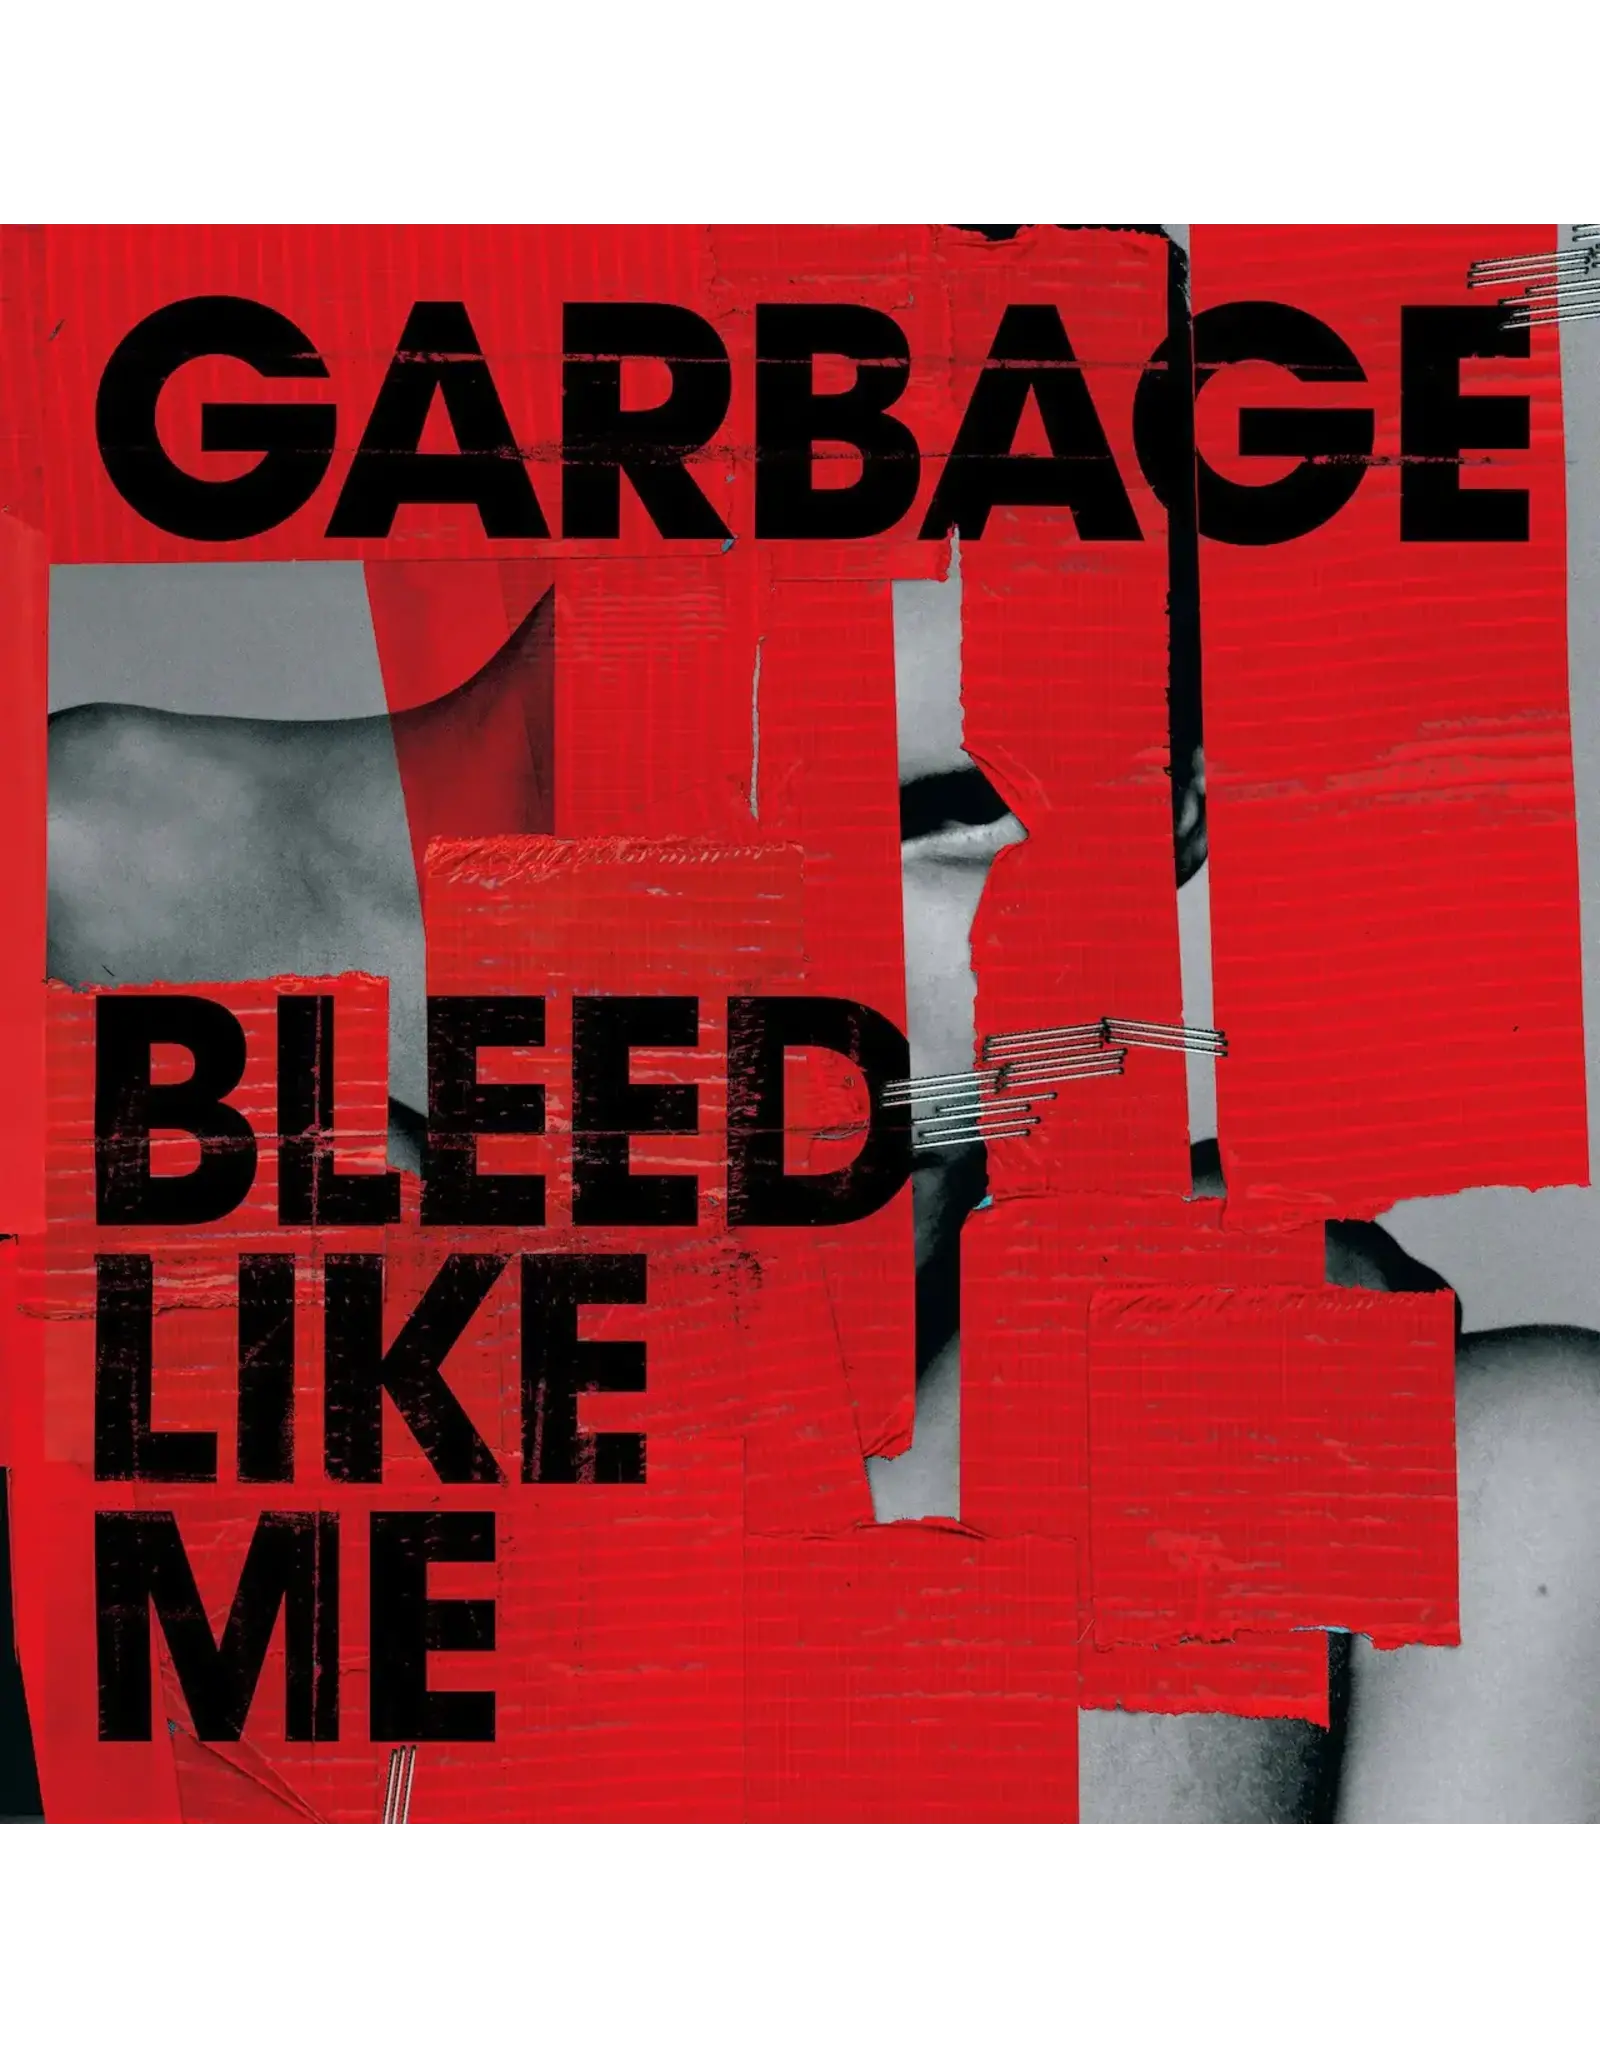 Garbage - Bleed Like Me (2024 Remaster)